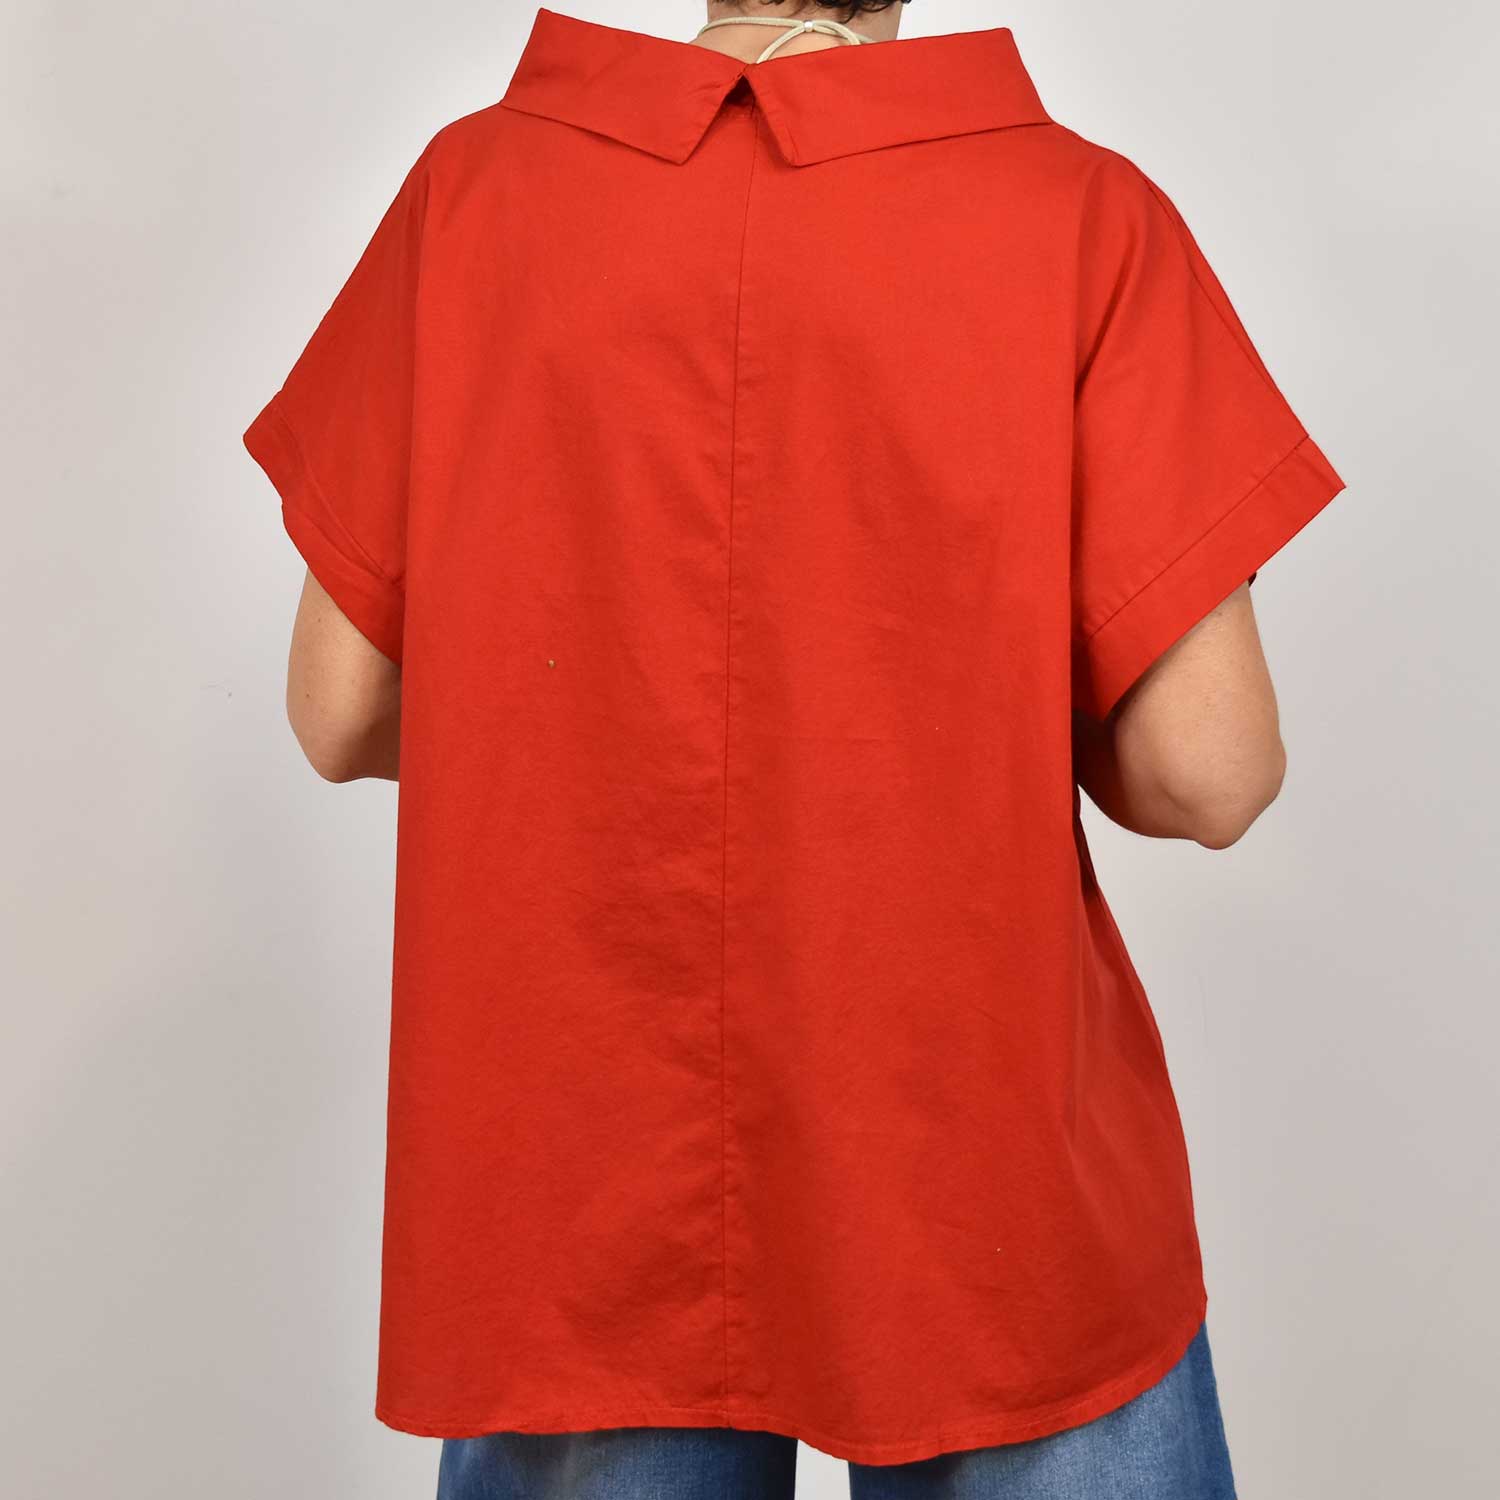 Blusa cuello manga corta roja